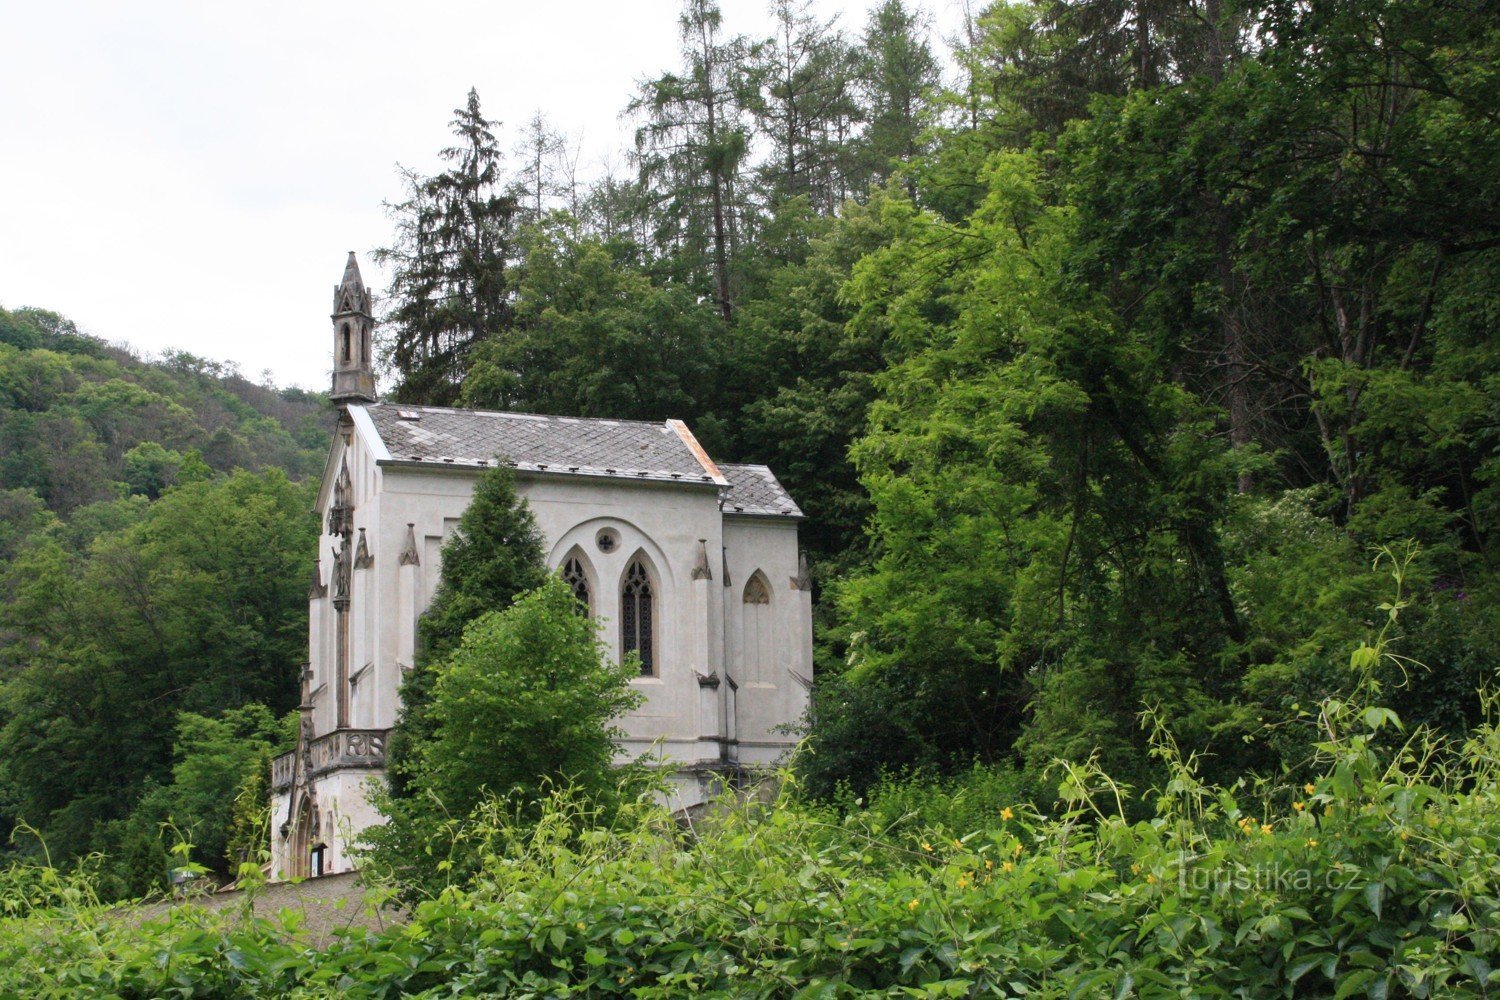 St. Jan pod Skalou és a temetői kápolna – a Szent János kápolna. Maximilian